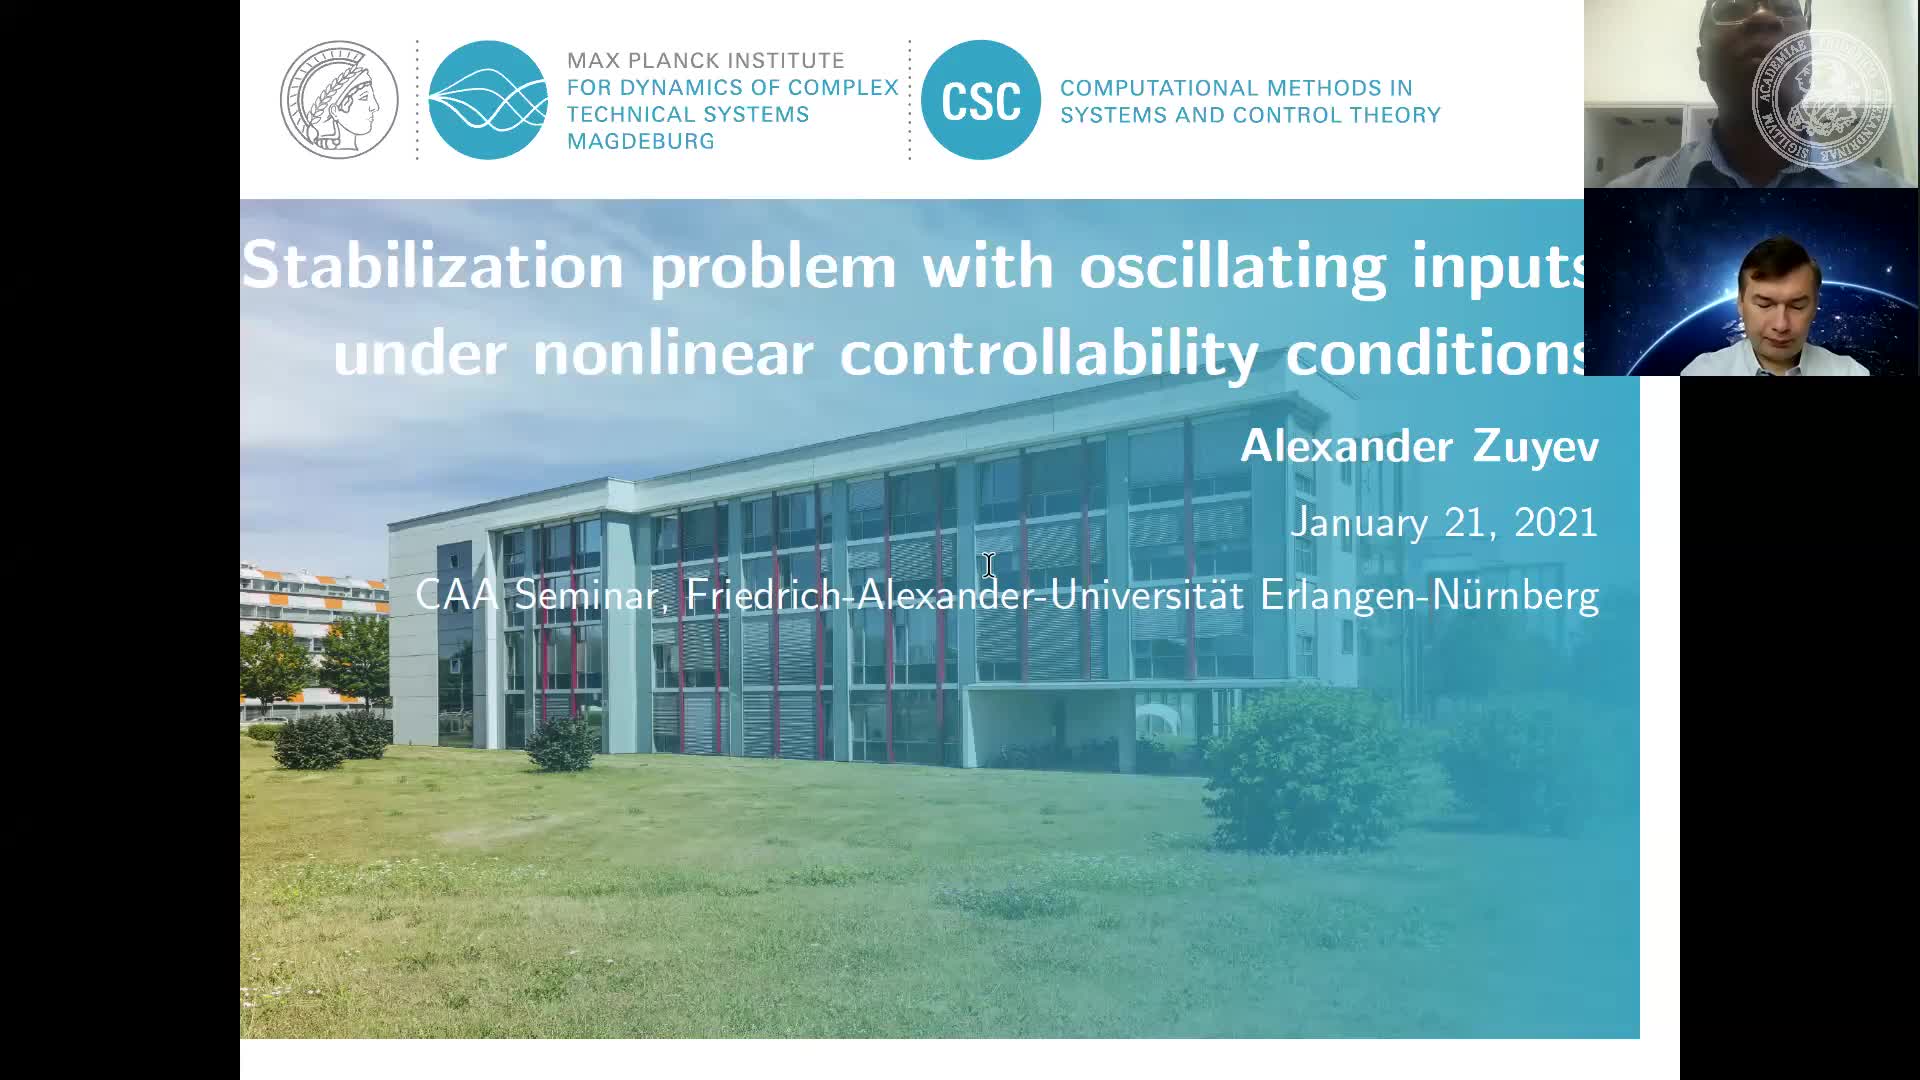 Stabilization problem with oscillating inputs under nonlinear controllability conditions (Alexander Zuyev, Max-Planck-Institut für Dynamik Komplexer Technischer Systeme) preview image